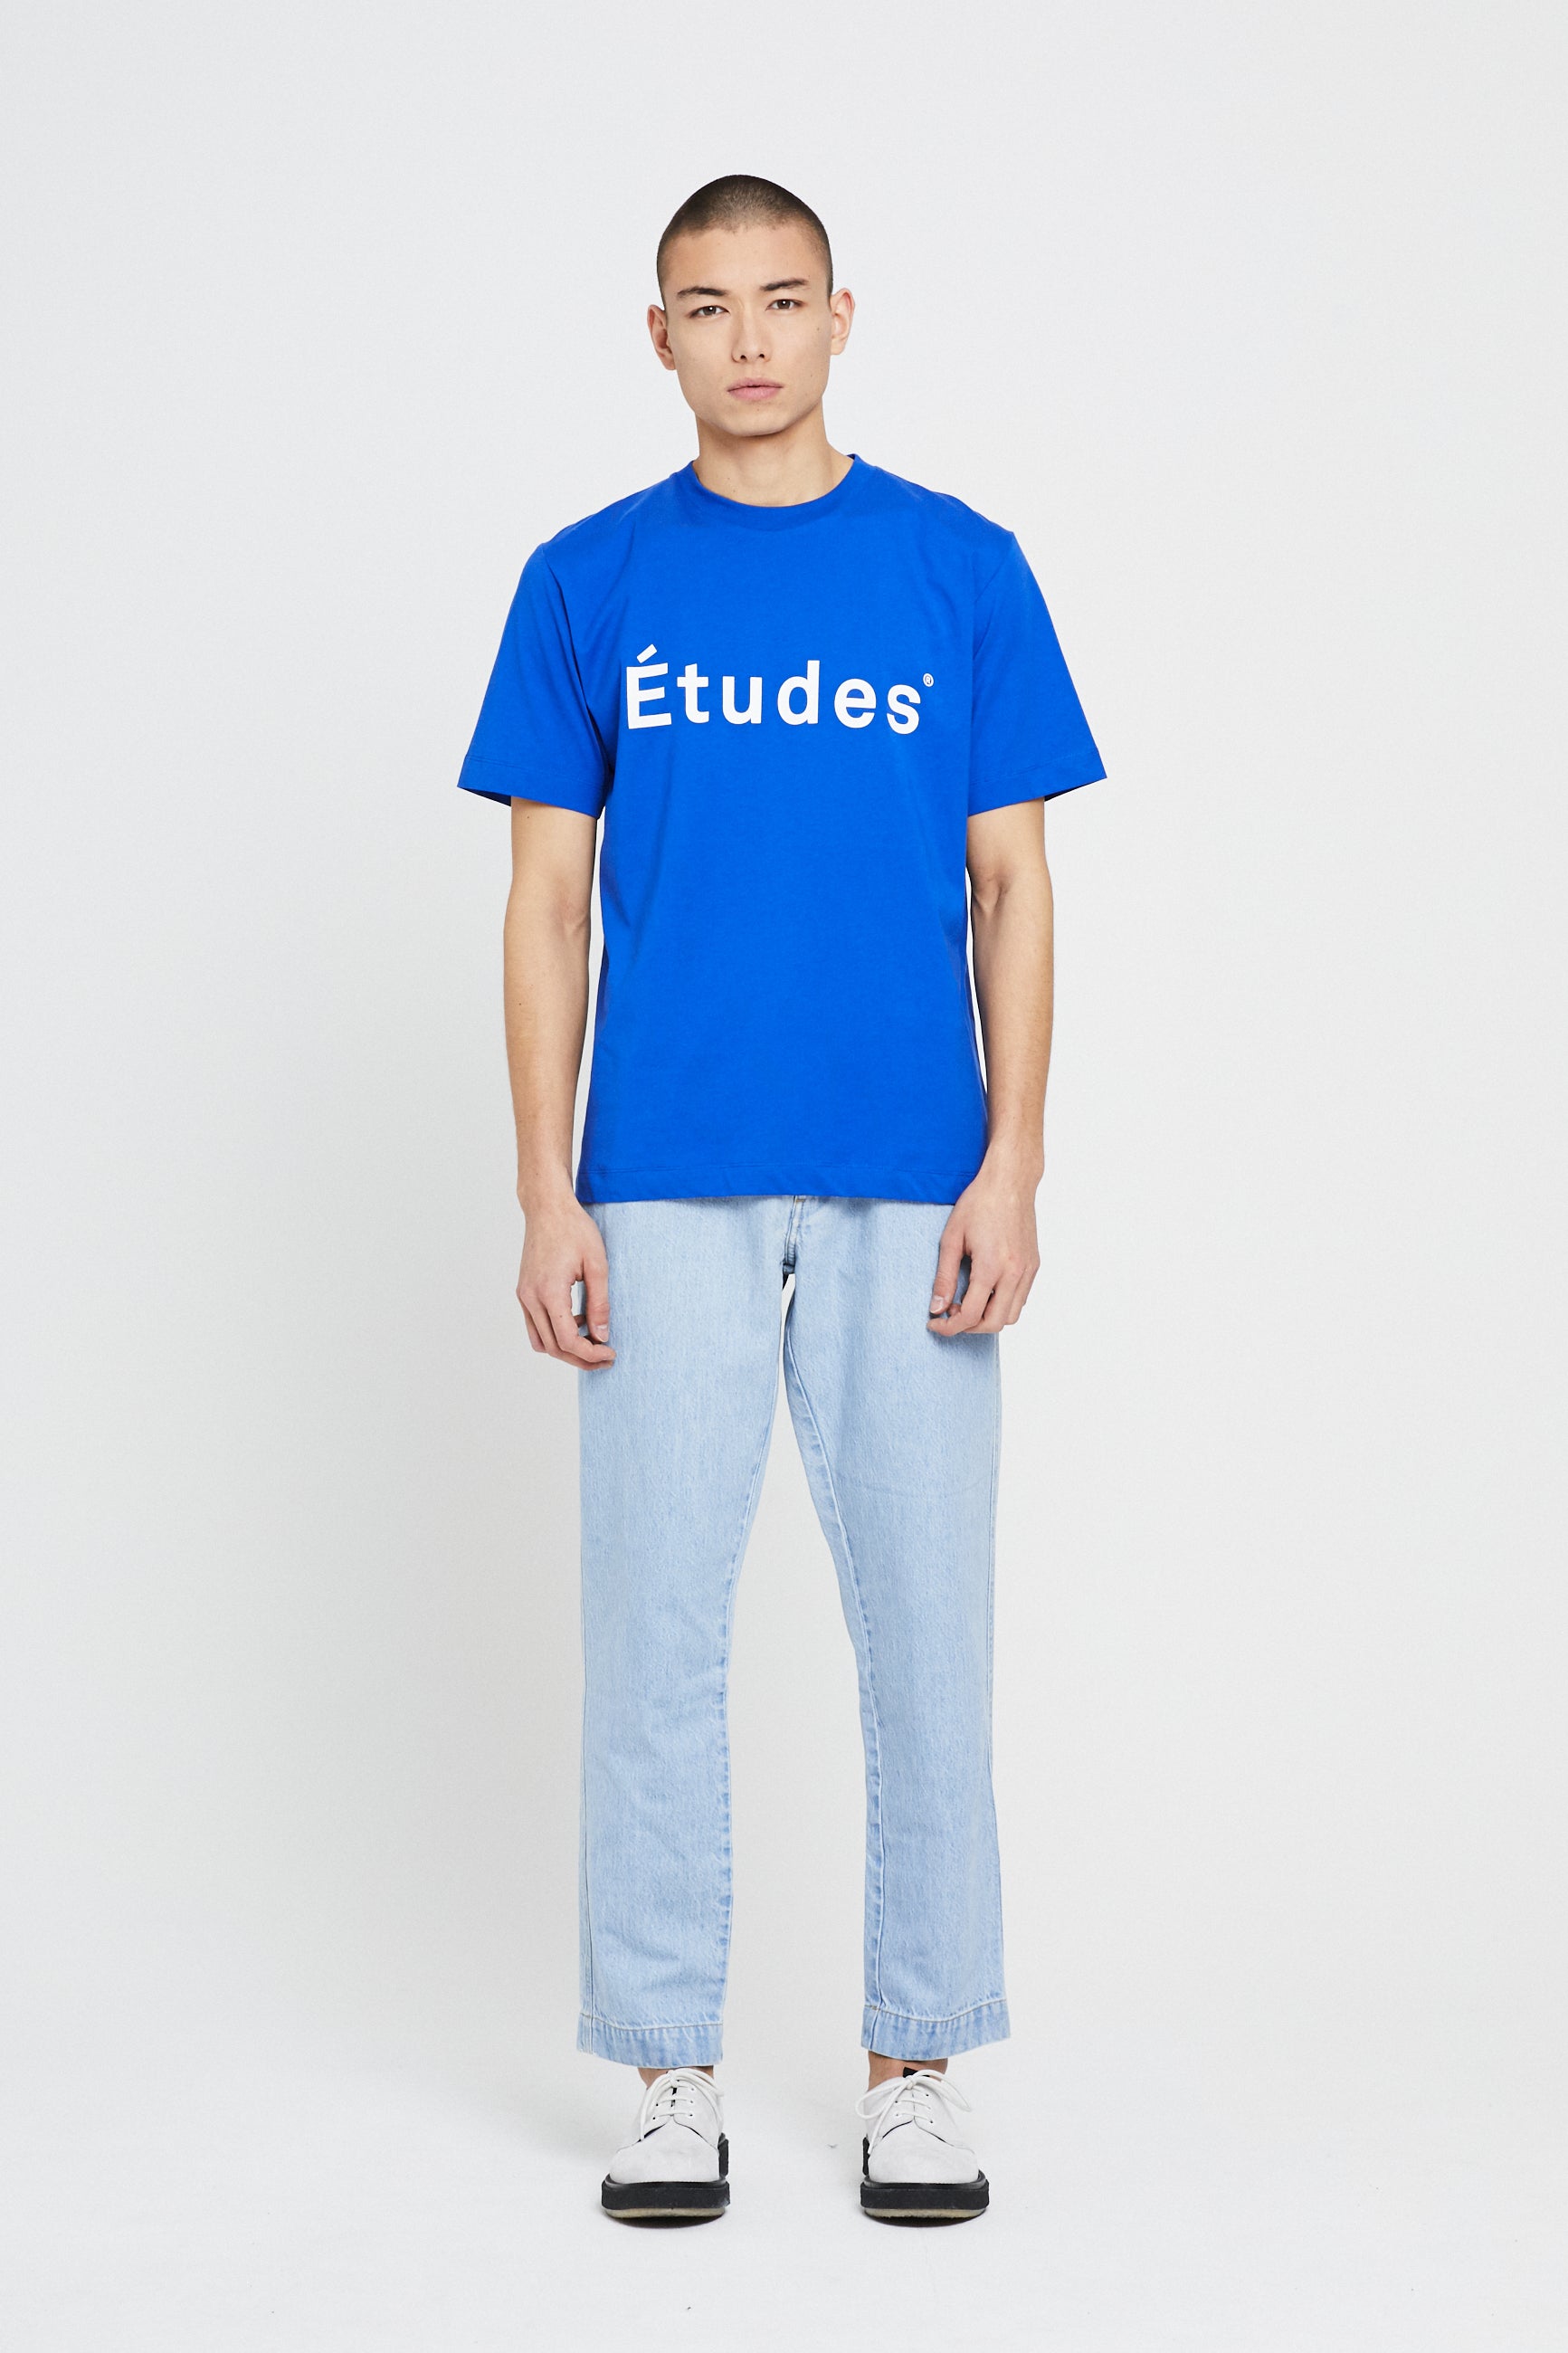 Études WONDER ETUDES BLUE t-shirt 1